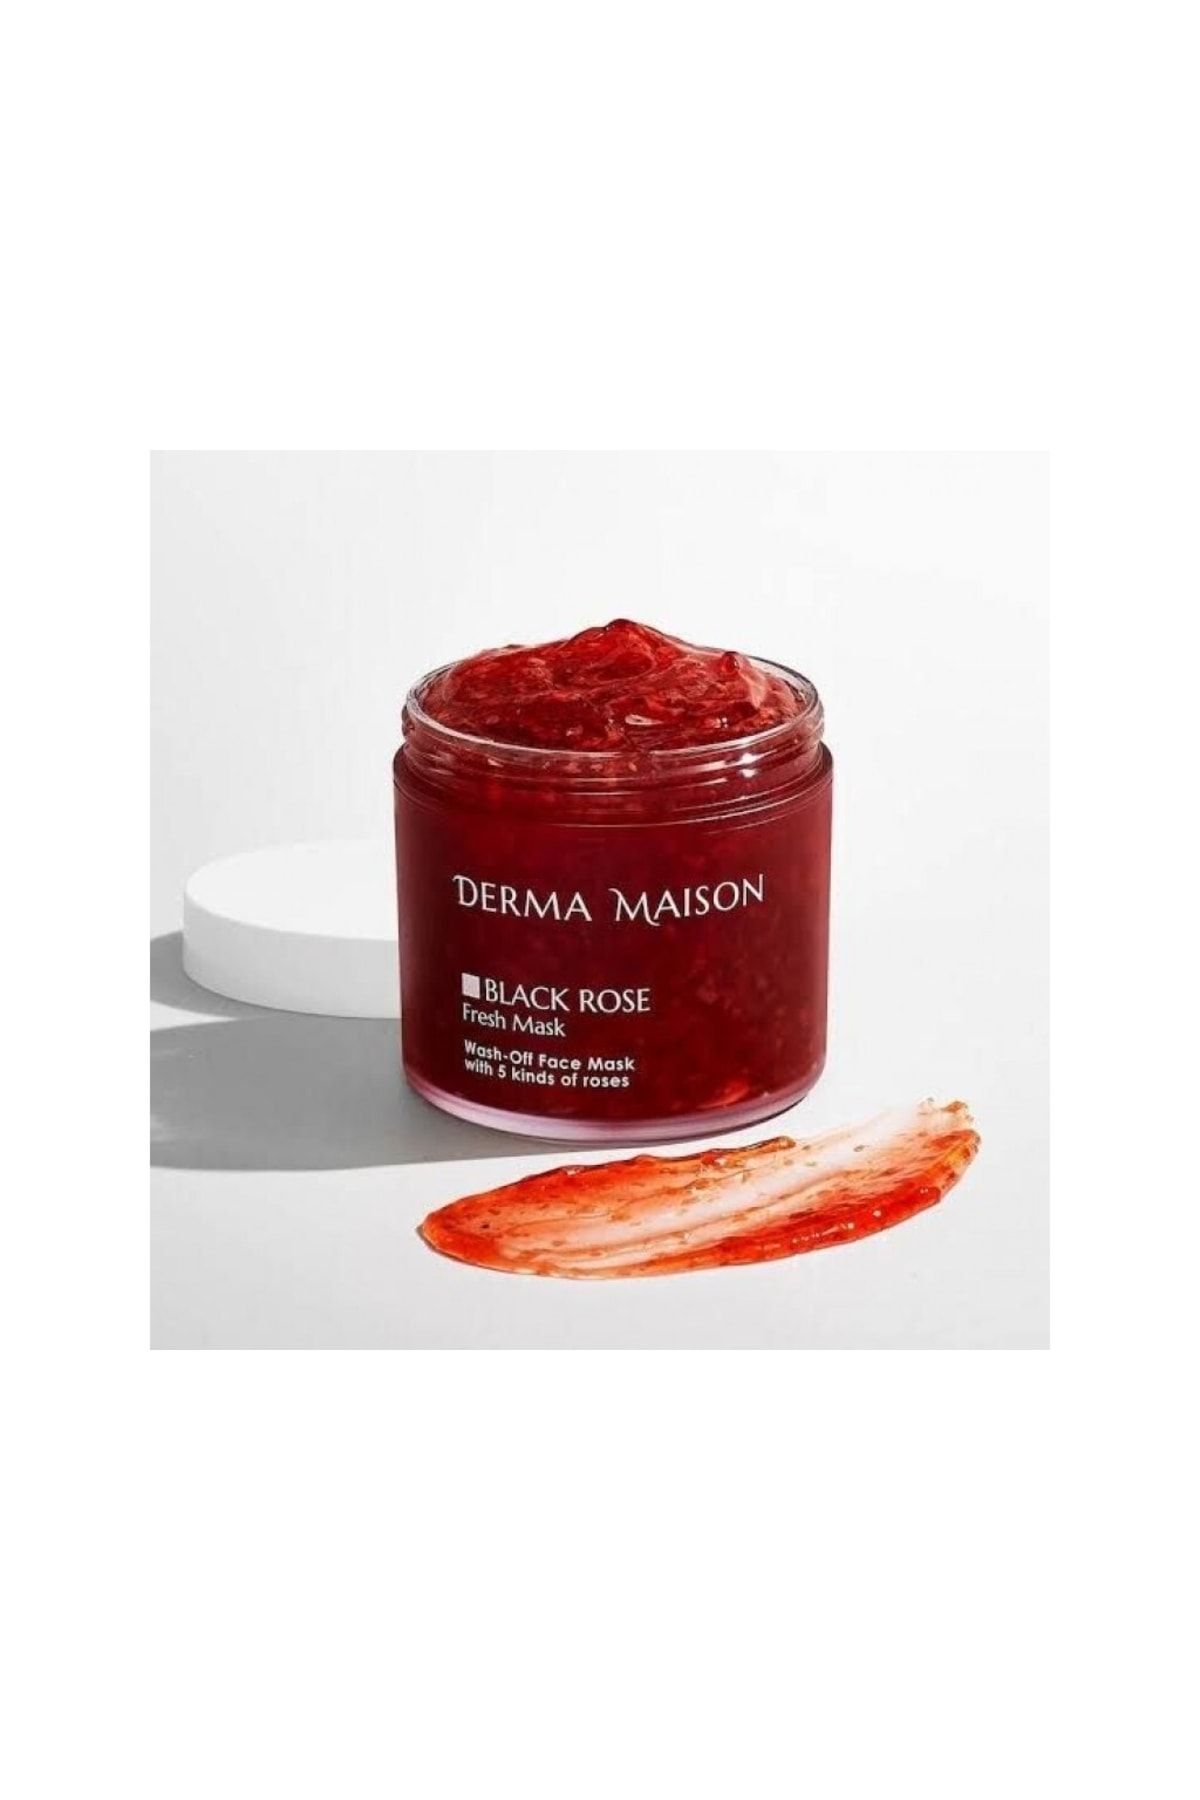 Medipeel Medi-peel Derma Maison Black Rose Wash Off Fresh Mask, 230g